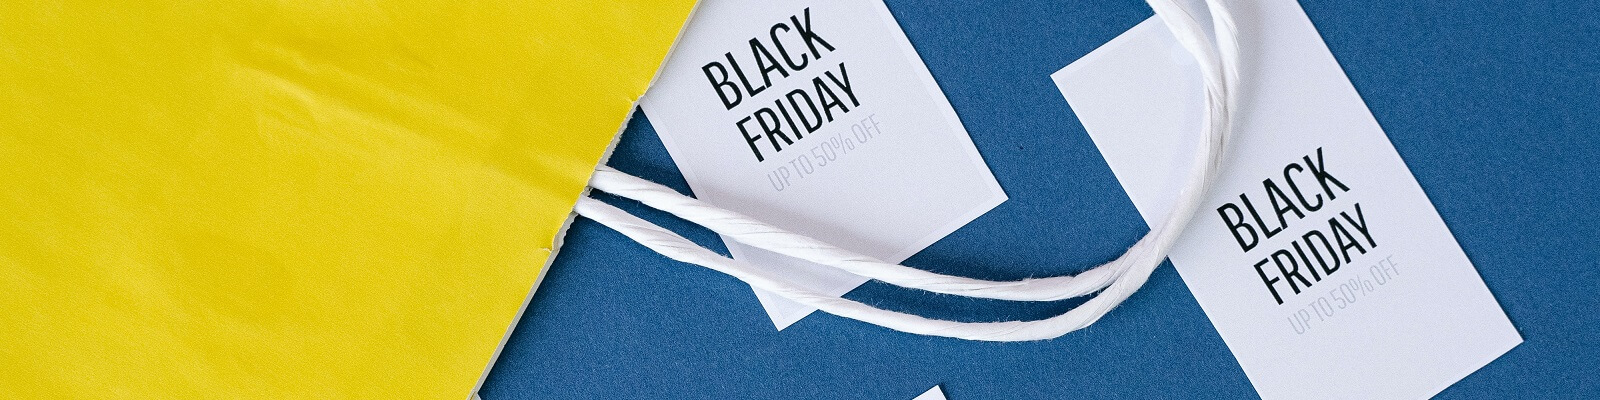 6 curiosidades sobre a Black Friday: a maior promoção do ano!